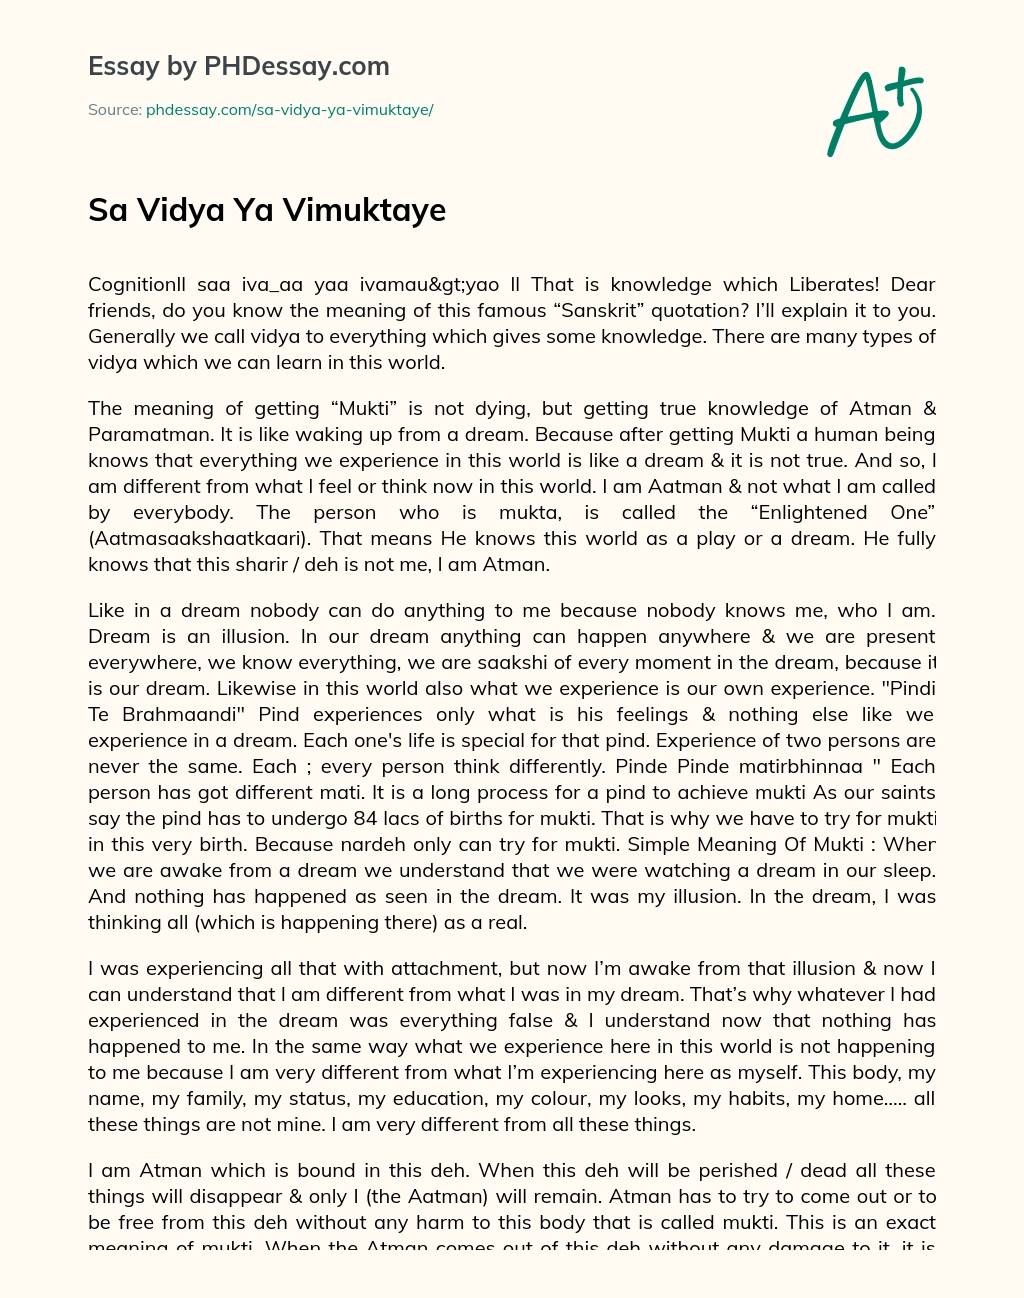 Sa Vidya Ya Vimuktaye essay